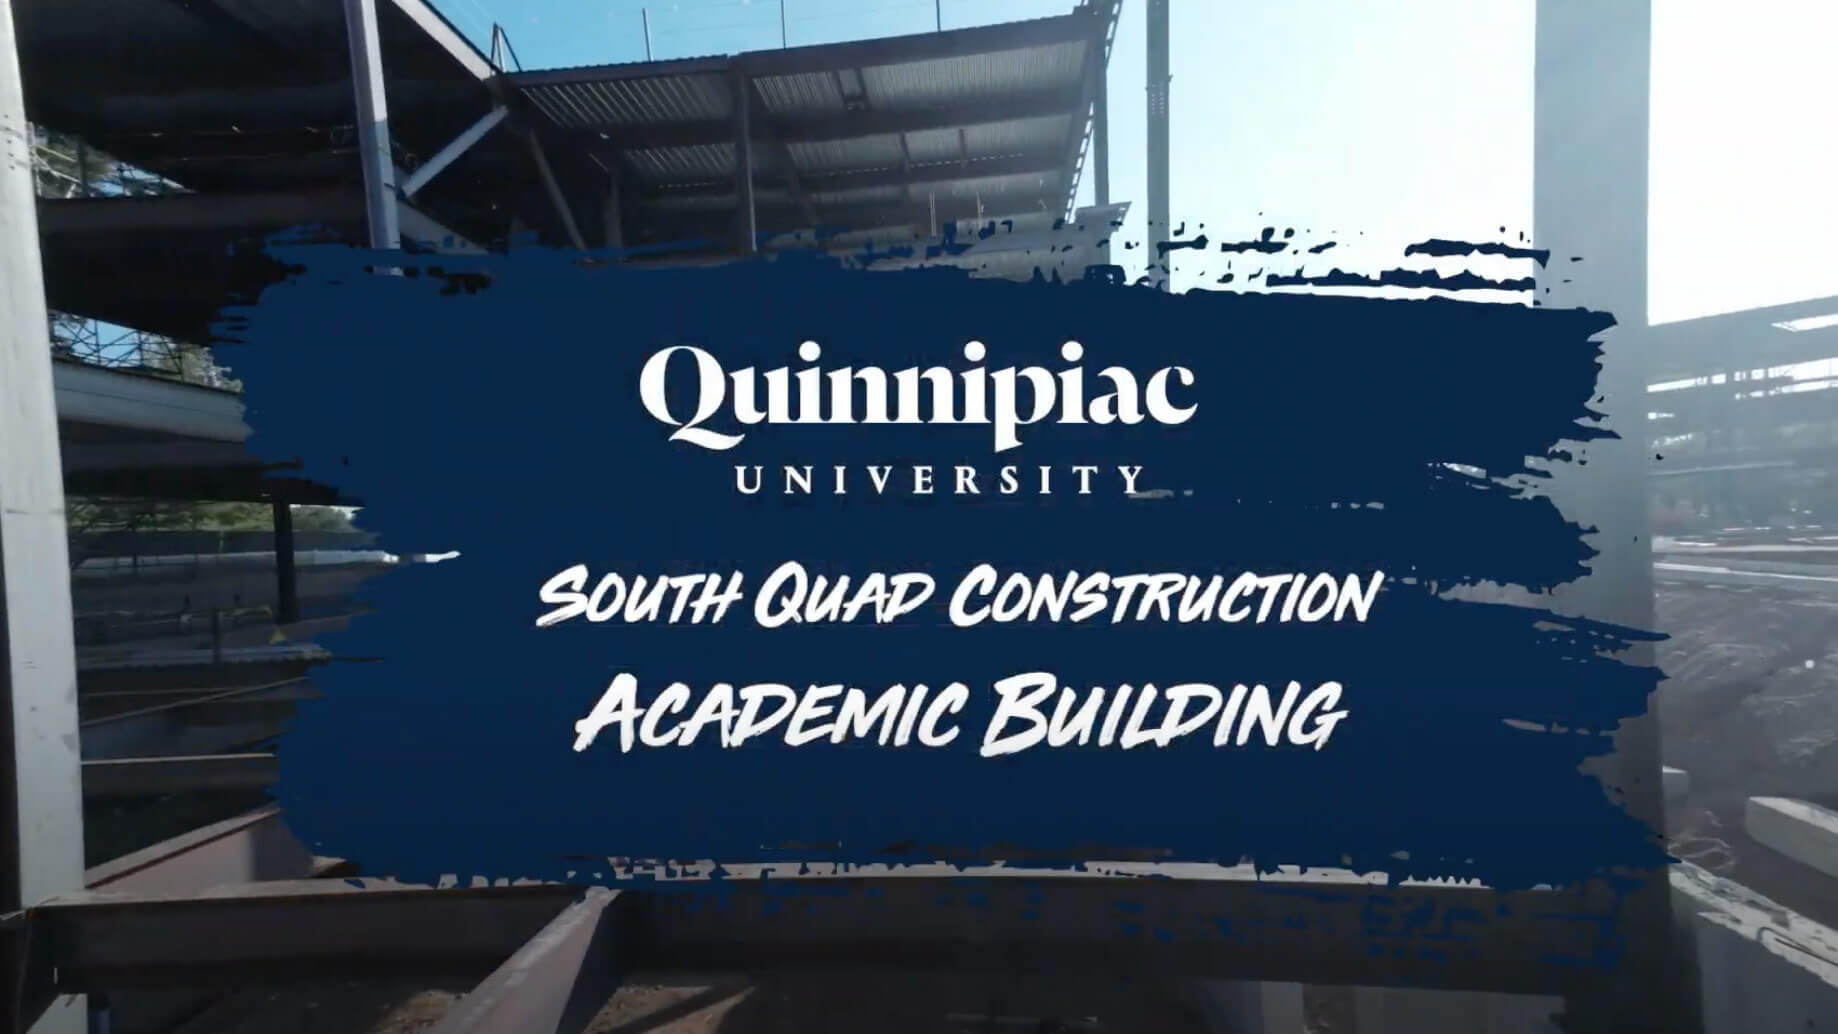 South Quad Academic Building drone tour thumbnail image.